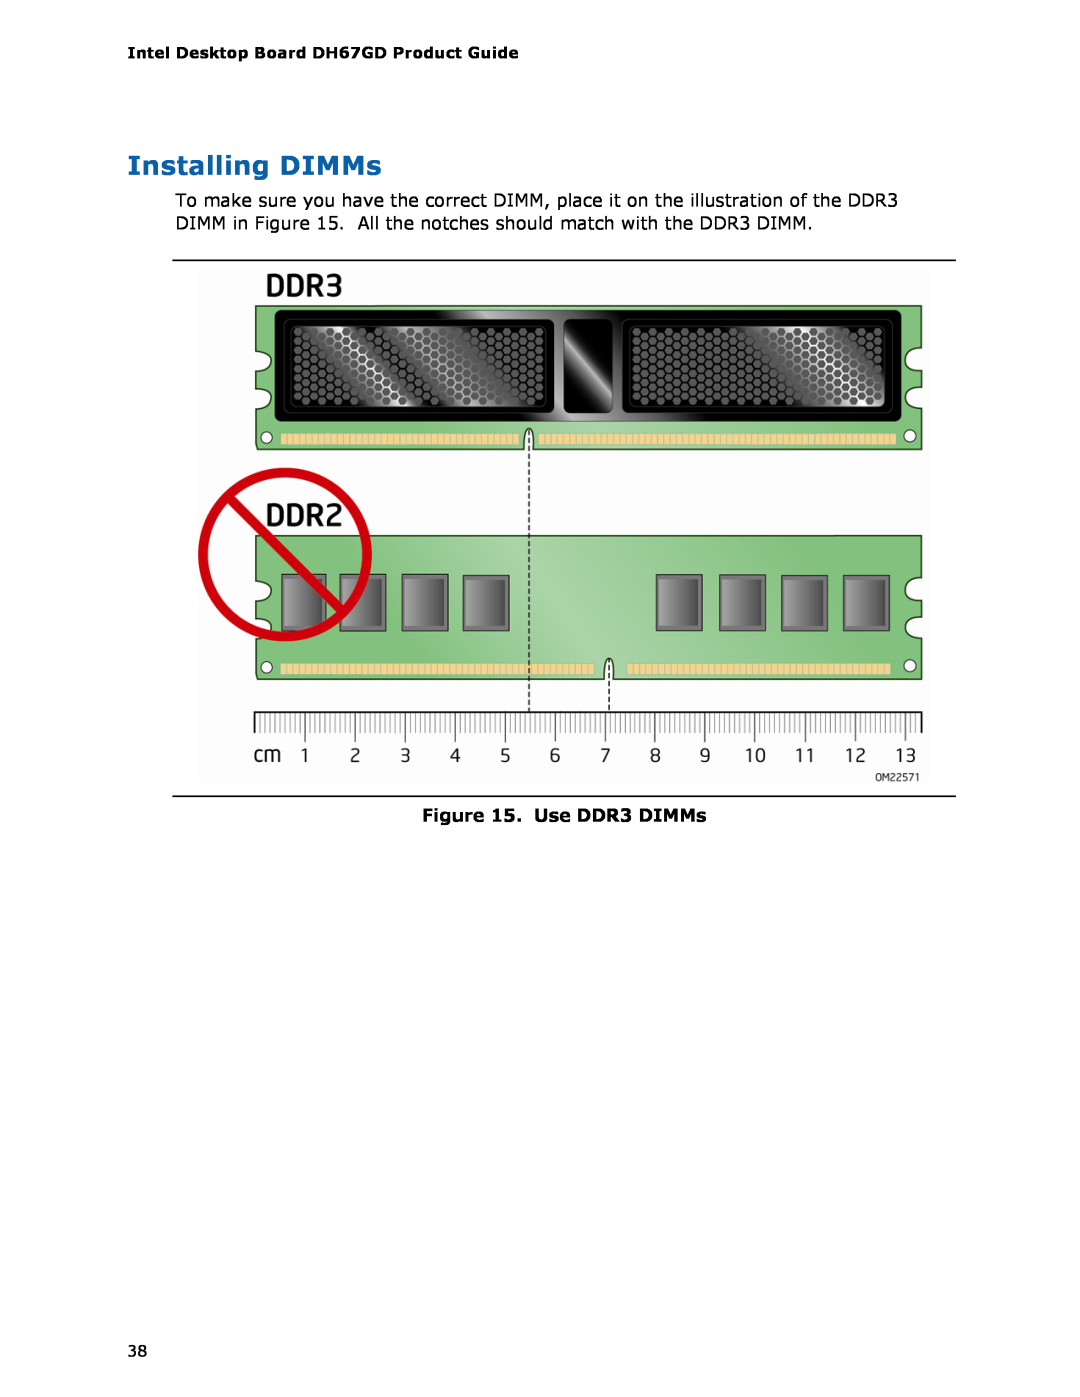 Intel G13841-001, BLKDH67GDB3 manual Installing DIMMs, Use DDR3 DIMMs 